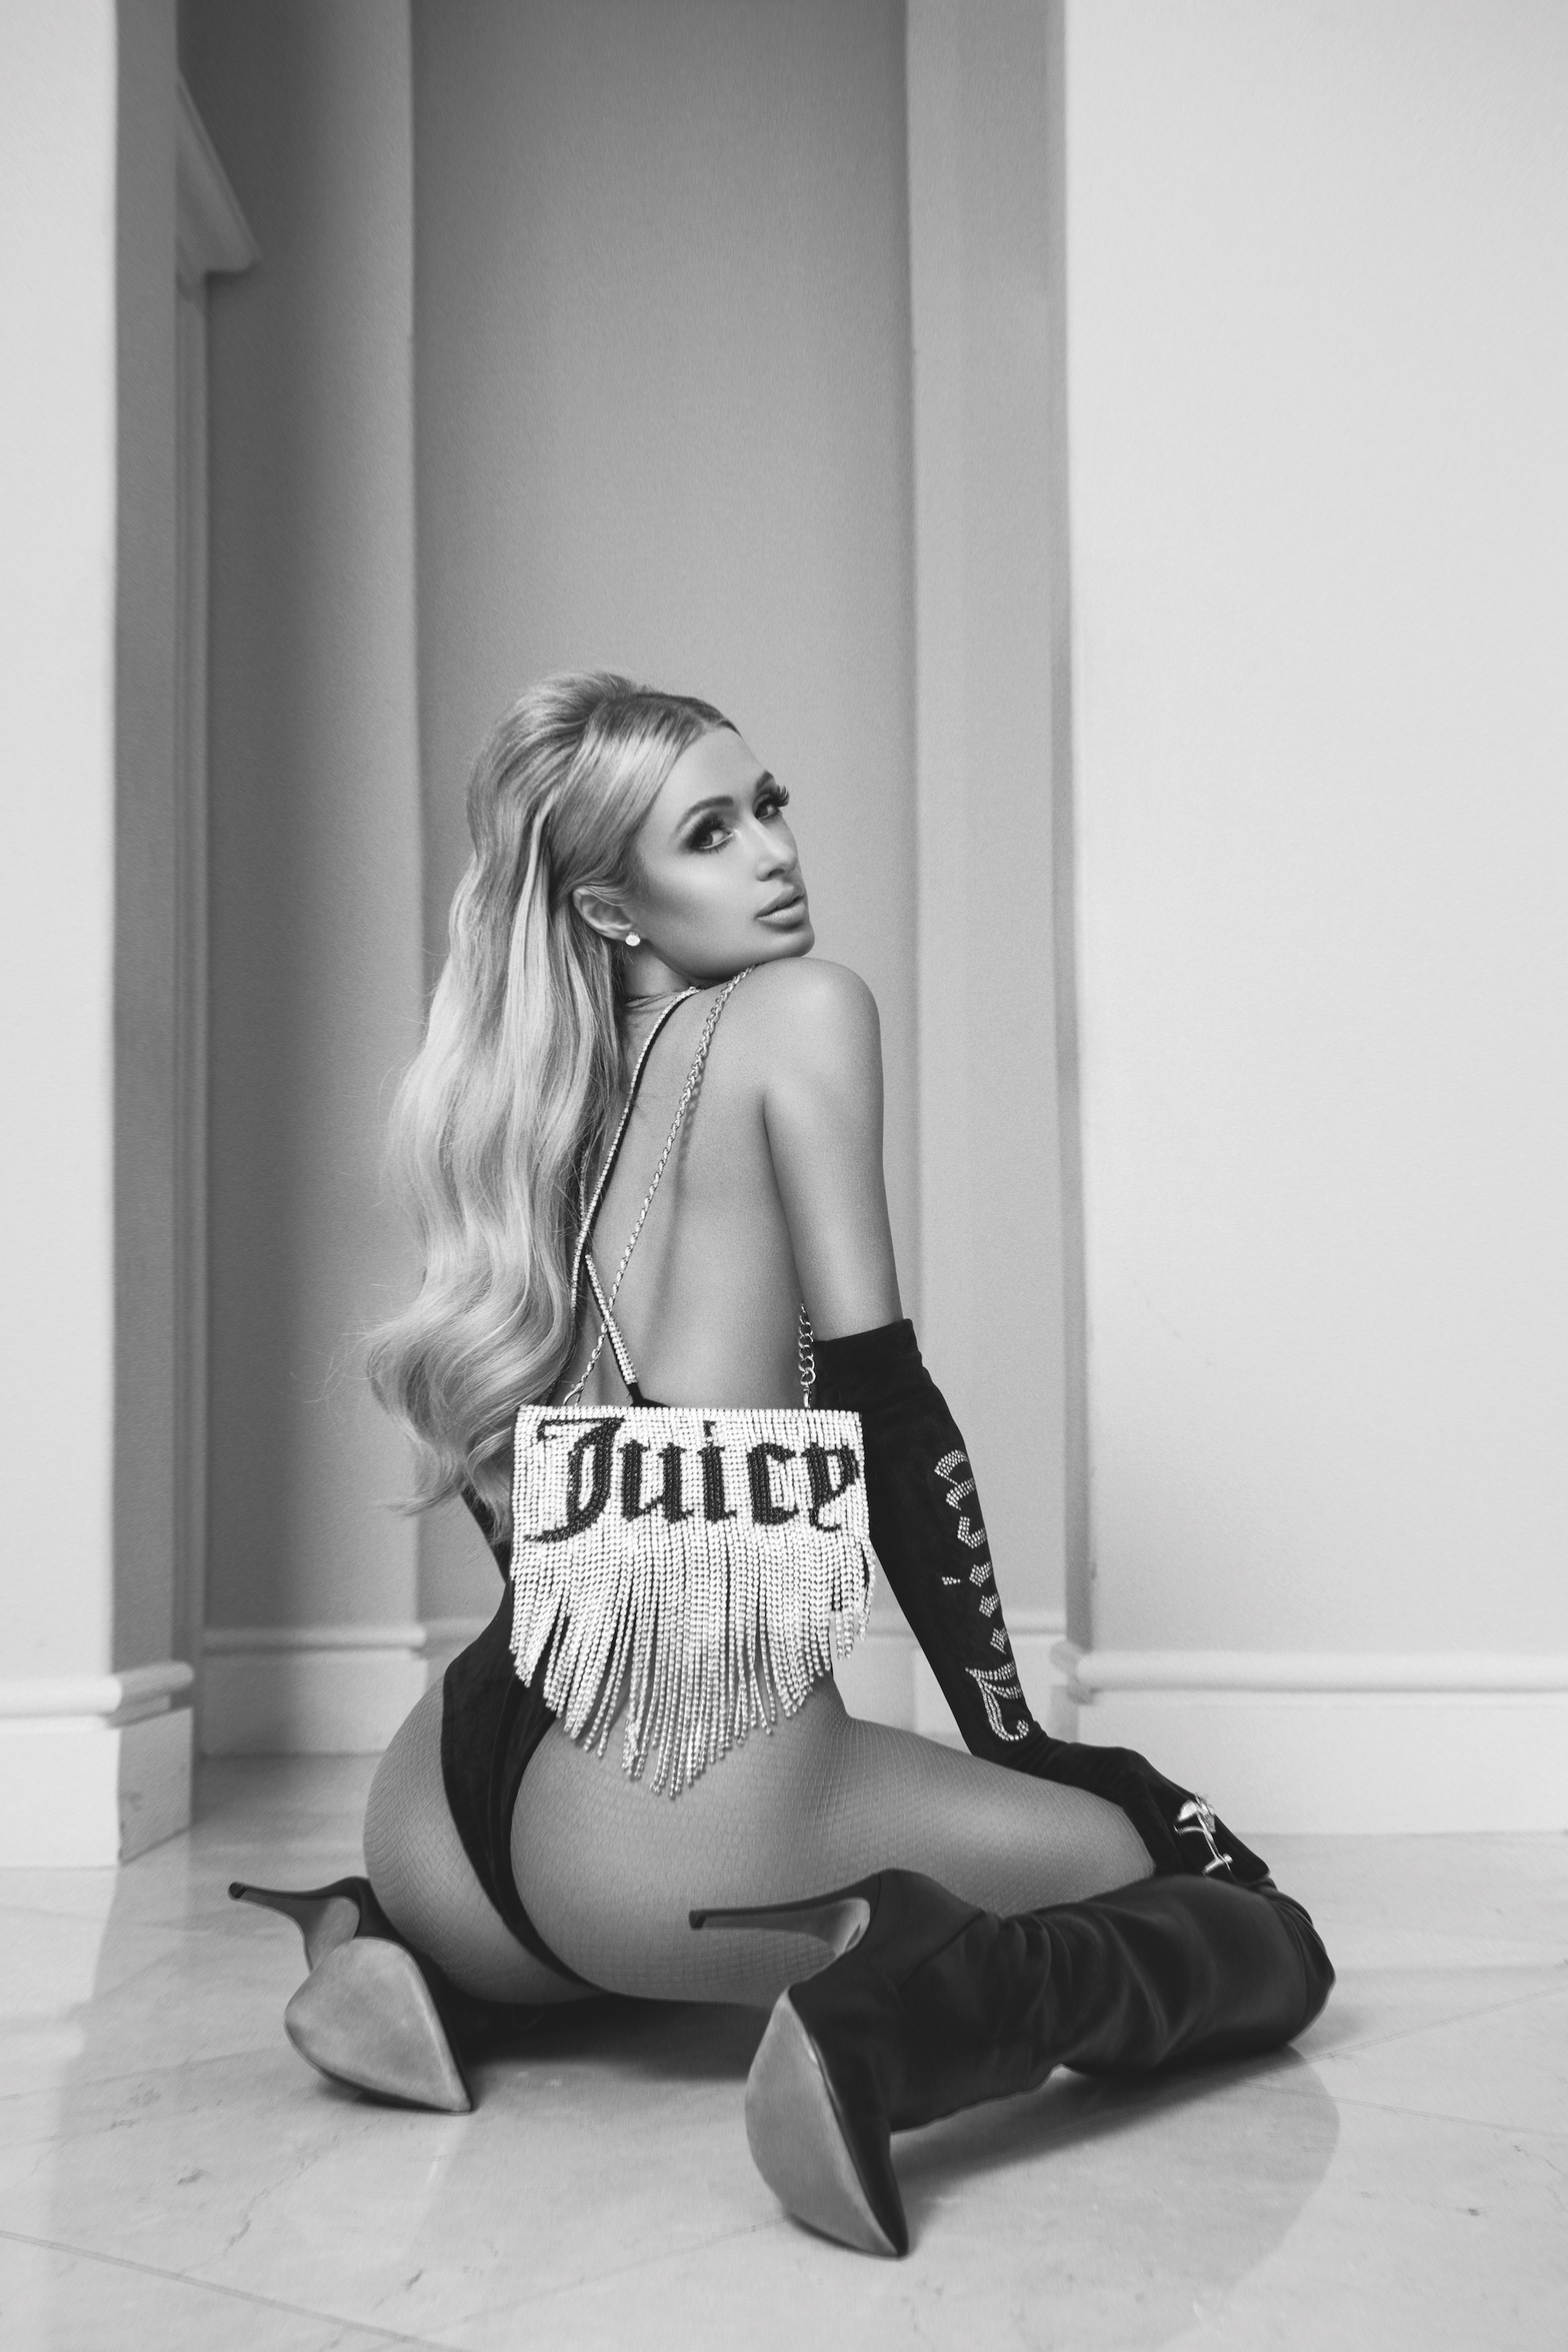 PHOTOS Paris Hilton suintant Sex Appeal dans New Shoot!